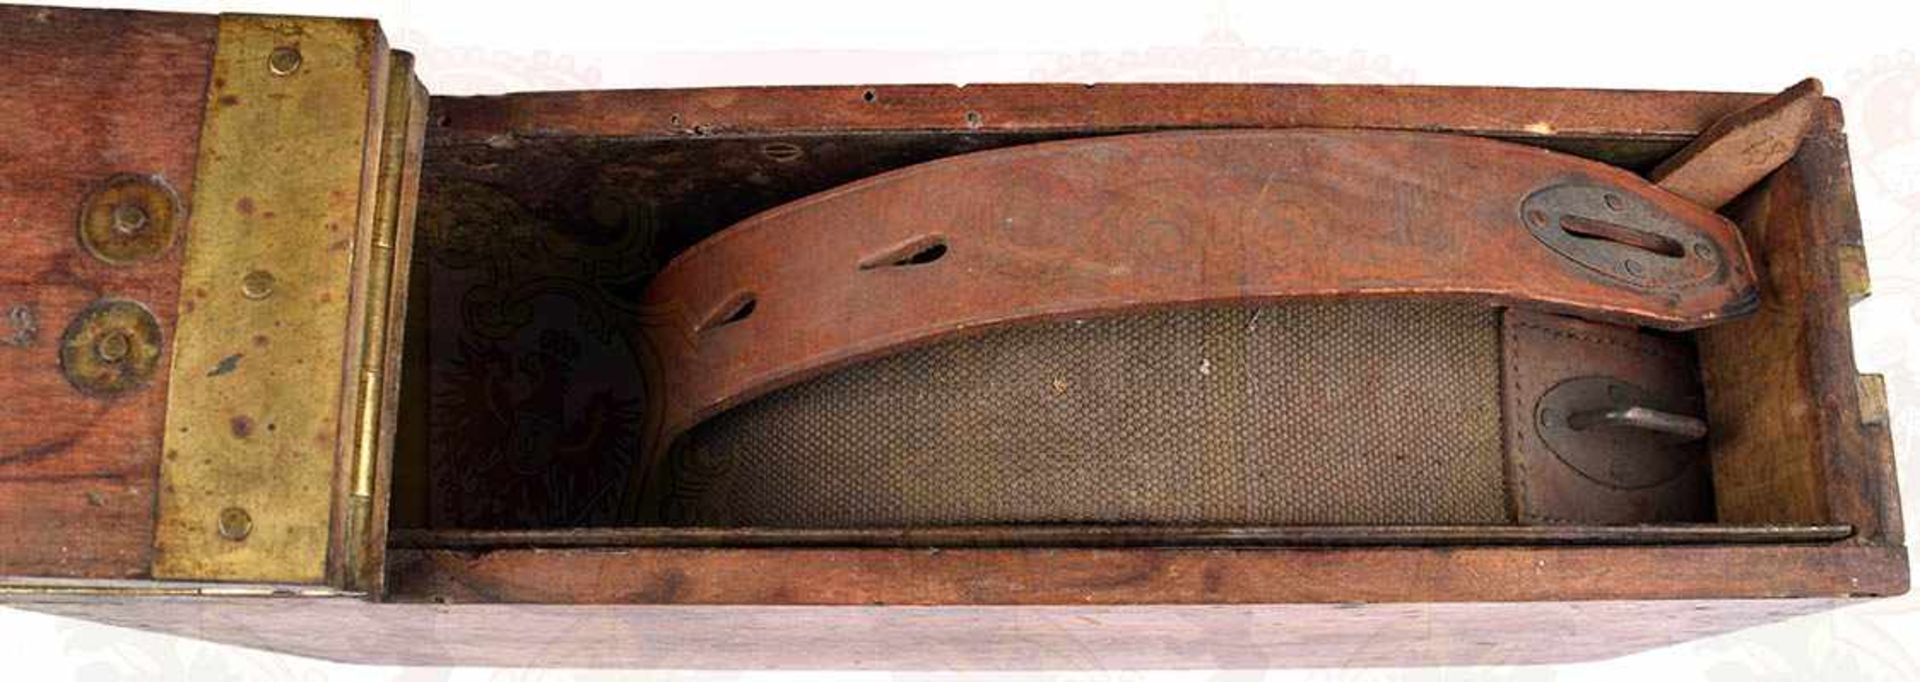 MG 13 GURTKASTEN, Holz, m. Beschlägen u. Tragegriff aus Messing, Einlage aus Stahlblech, 38x19x10cm, - Bild 2 aus 3